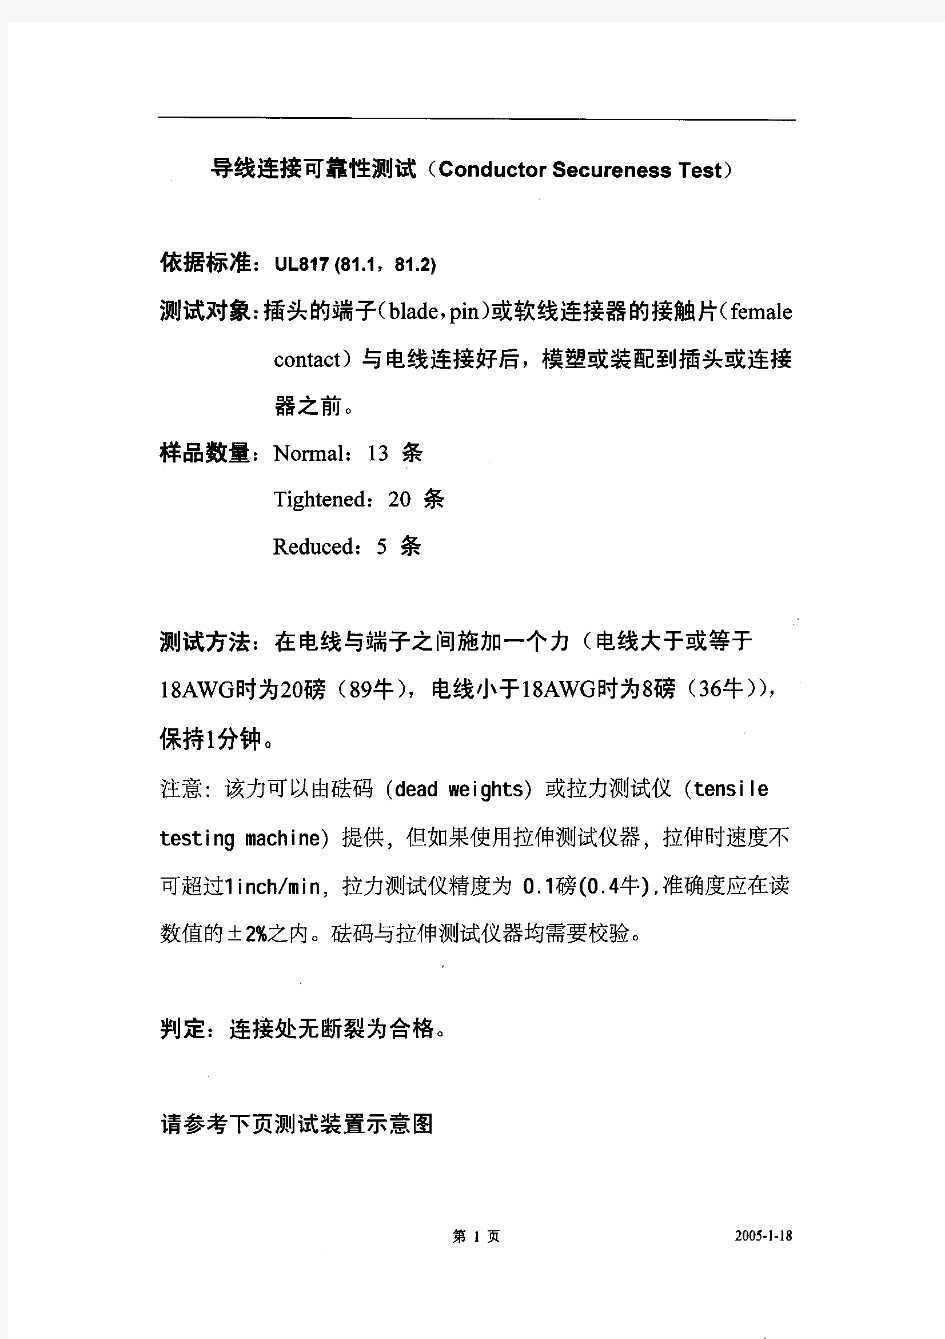 UL817中文测试方法指导